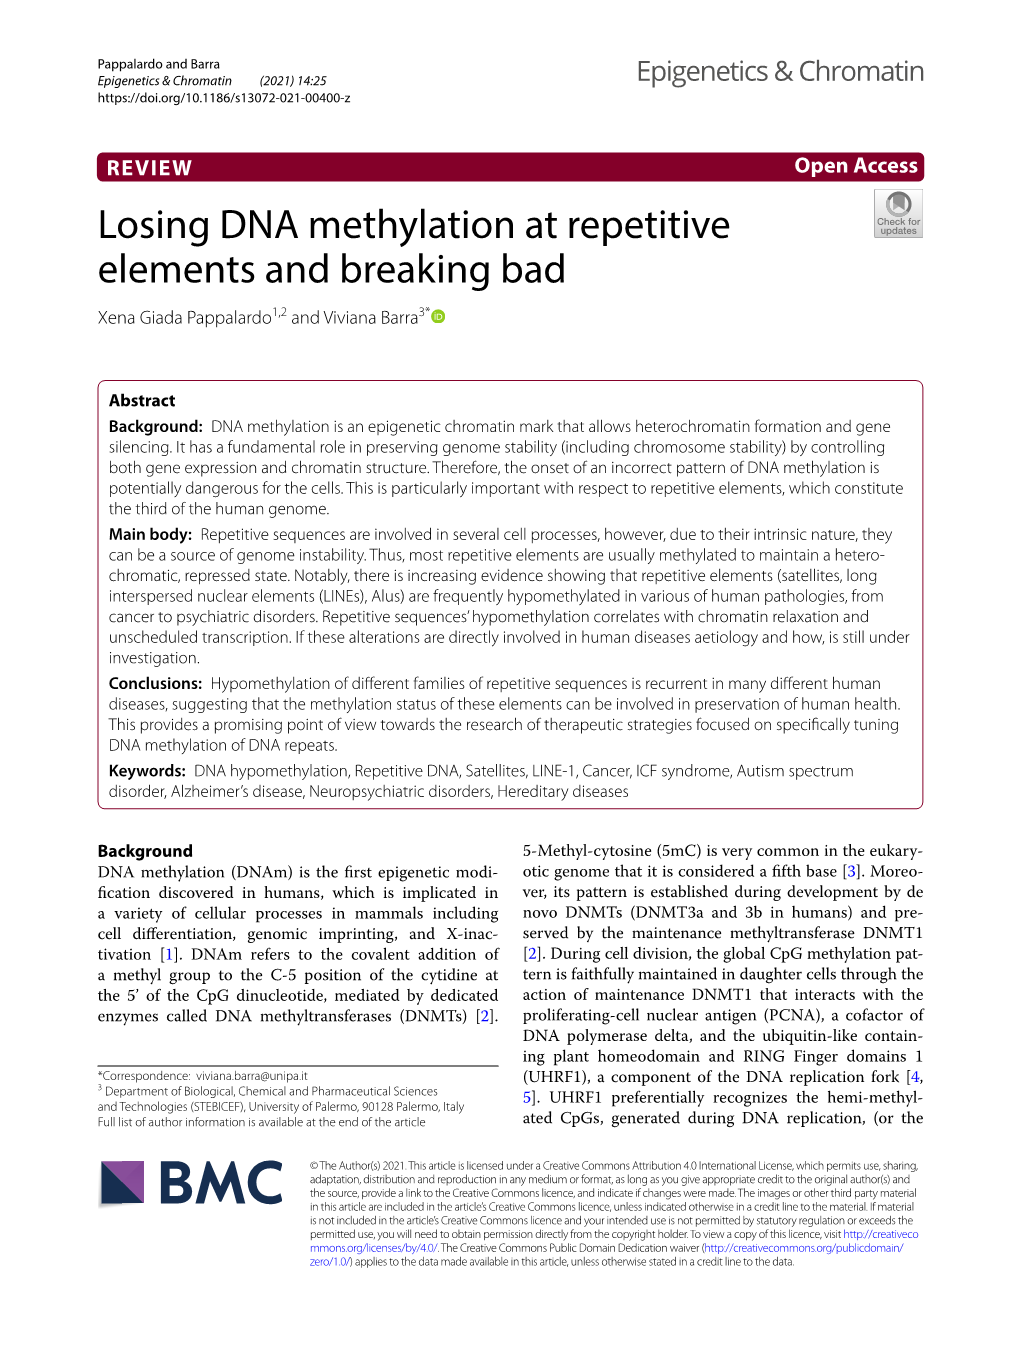 Losing DNA Methylation at Repetitive Elements and Breaking Bad Xena Giada Pappalardo1,2 and Viviana Barra3*